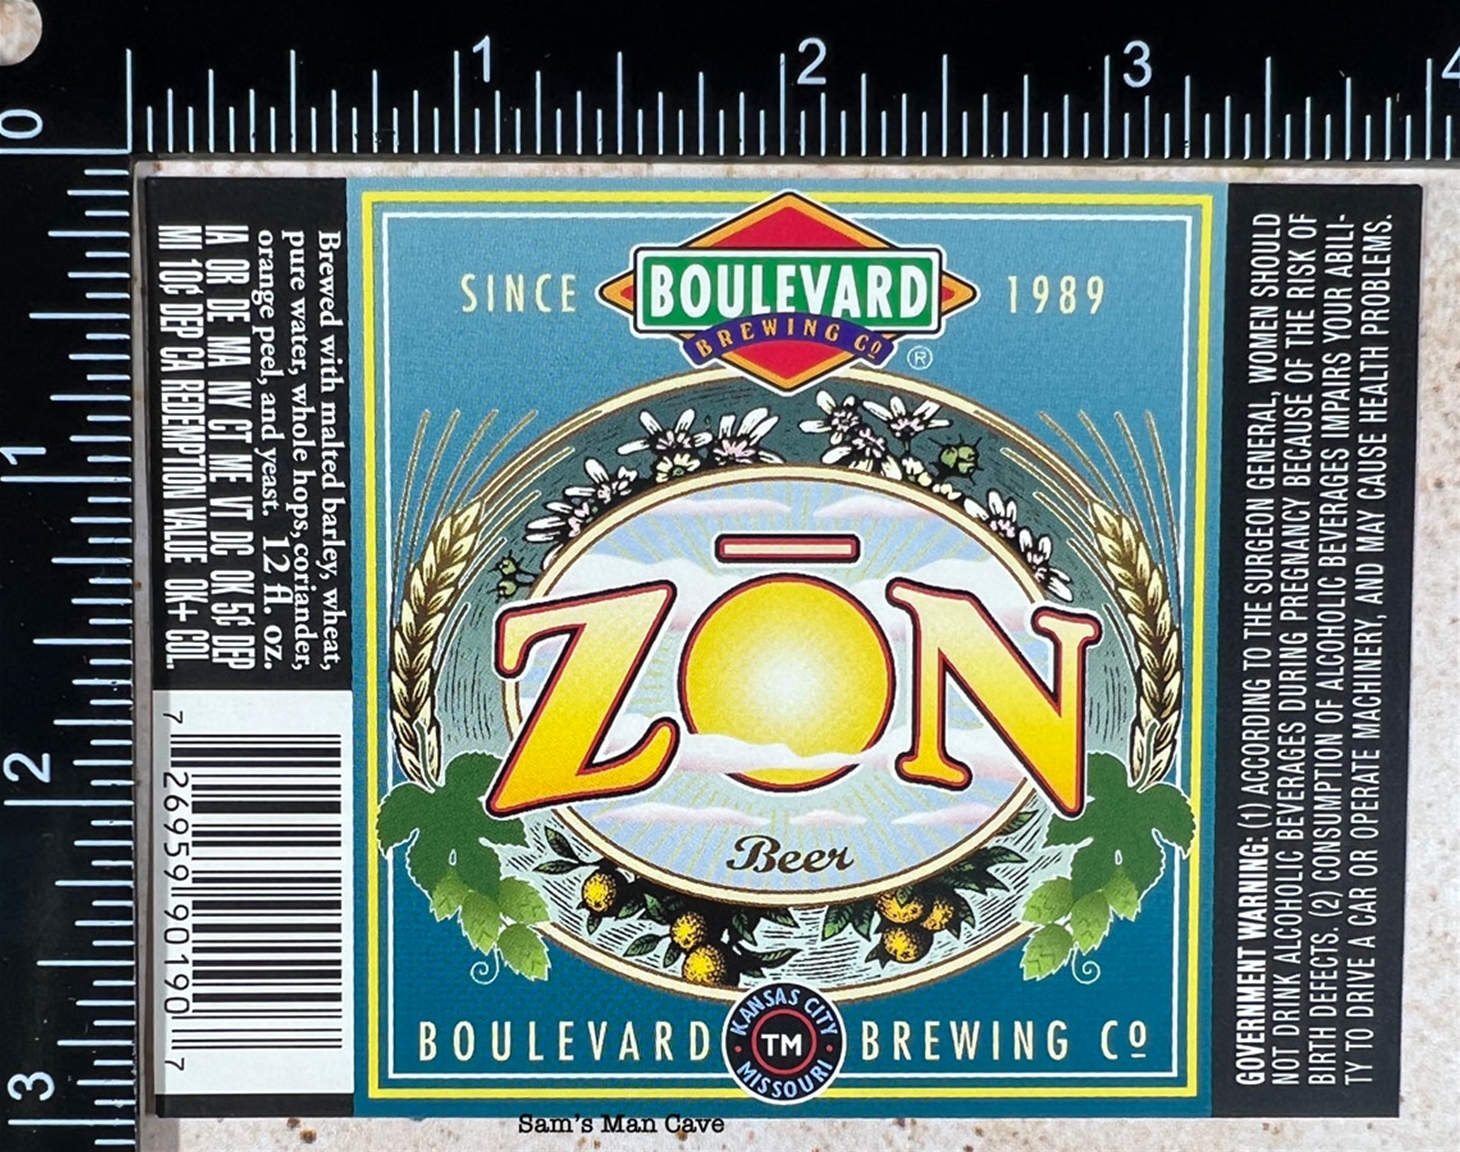 Boulevard Zon Beer Label